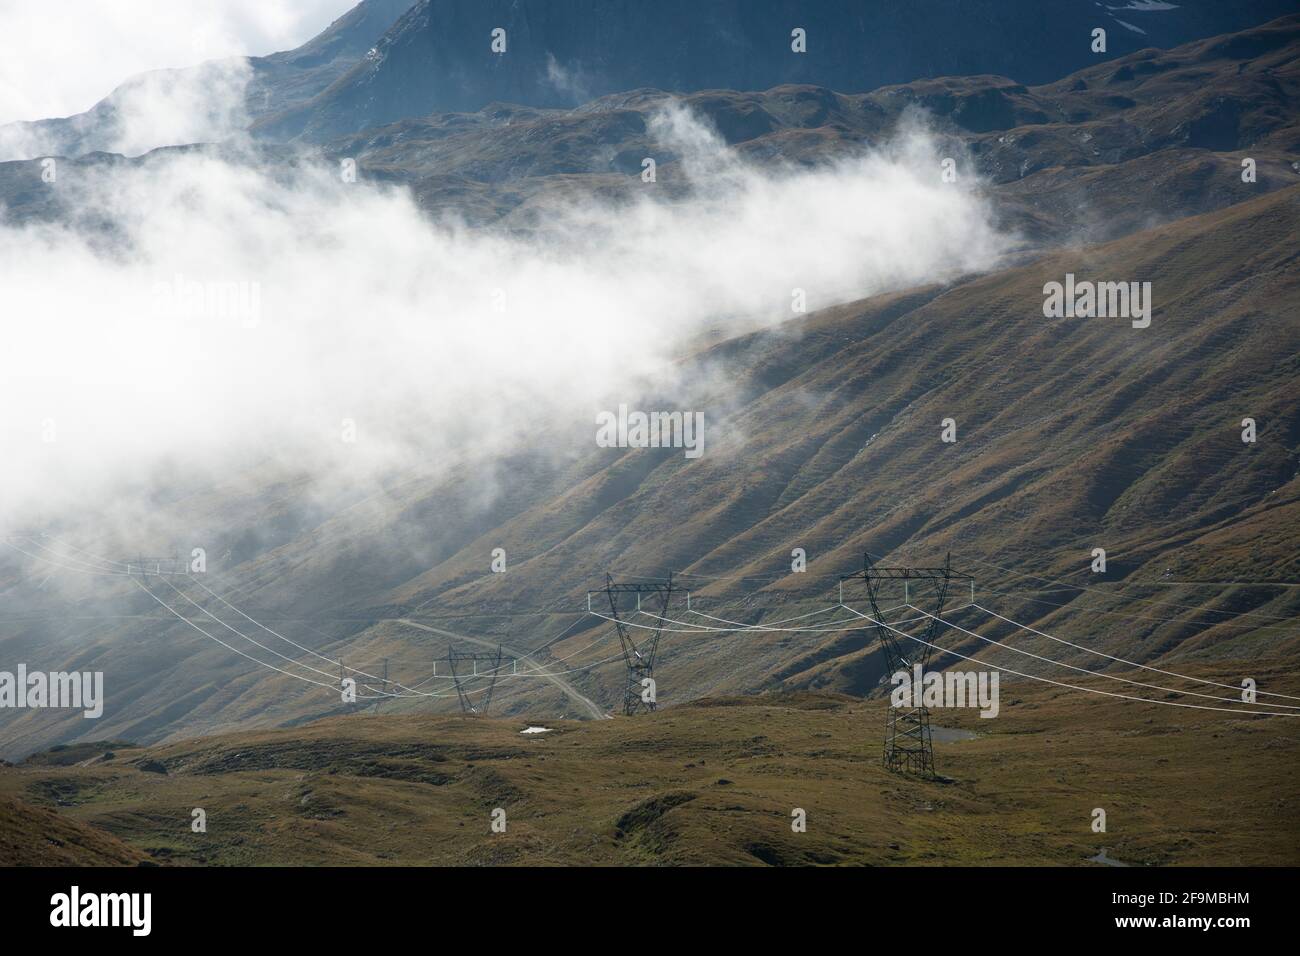 Stromleitung an der Grenze zwischen der Schweiz und Italien auf marcos passo San Giacomo Foto de stock